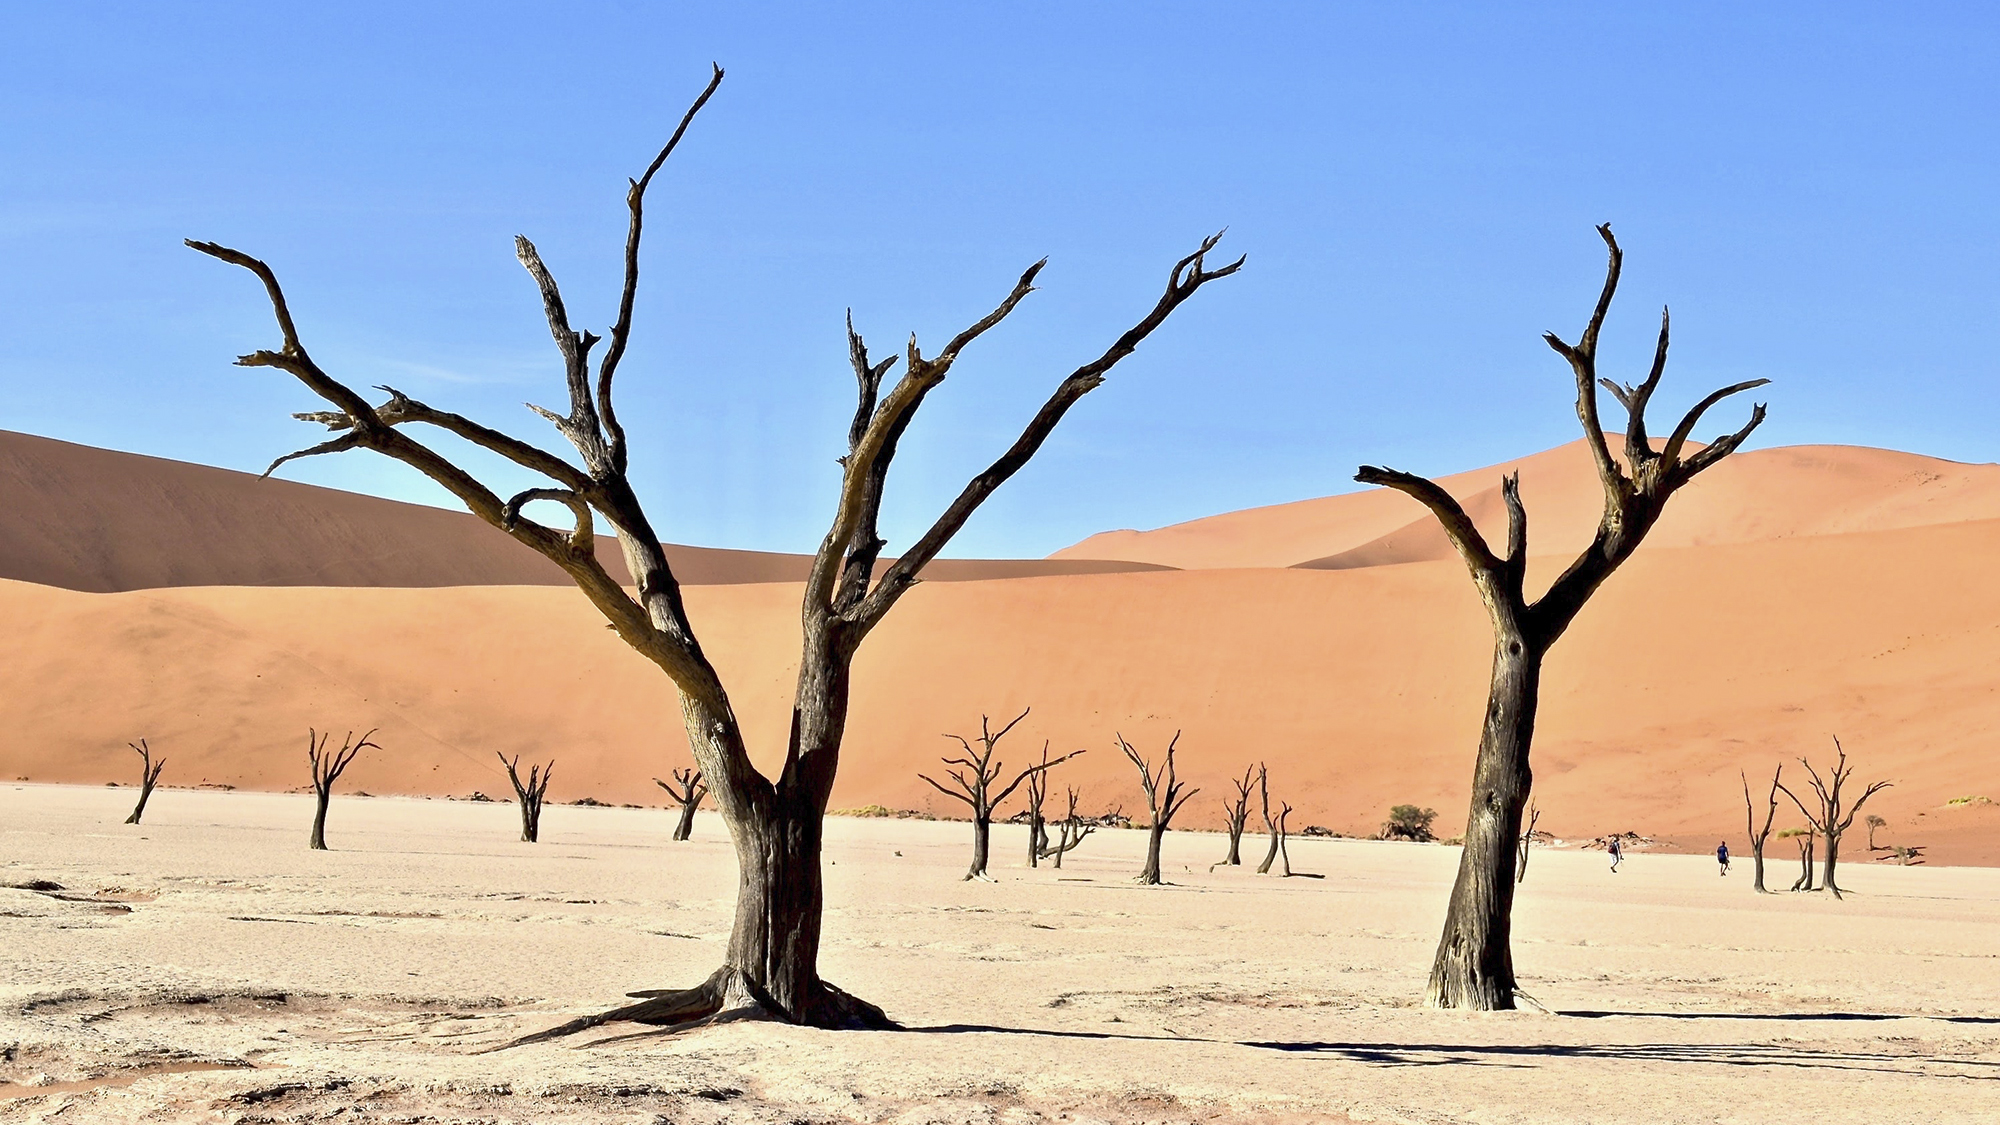 Incrementos de aridez como los que se esperan por el cambio climático podrían alterar de forma brusca e incluso poner en peligro los ecosistemas en zonas áridas de nuestro planeta. | Imagen de Parsing Eye en Unsplash.